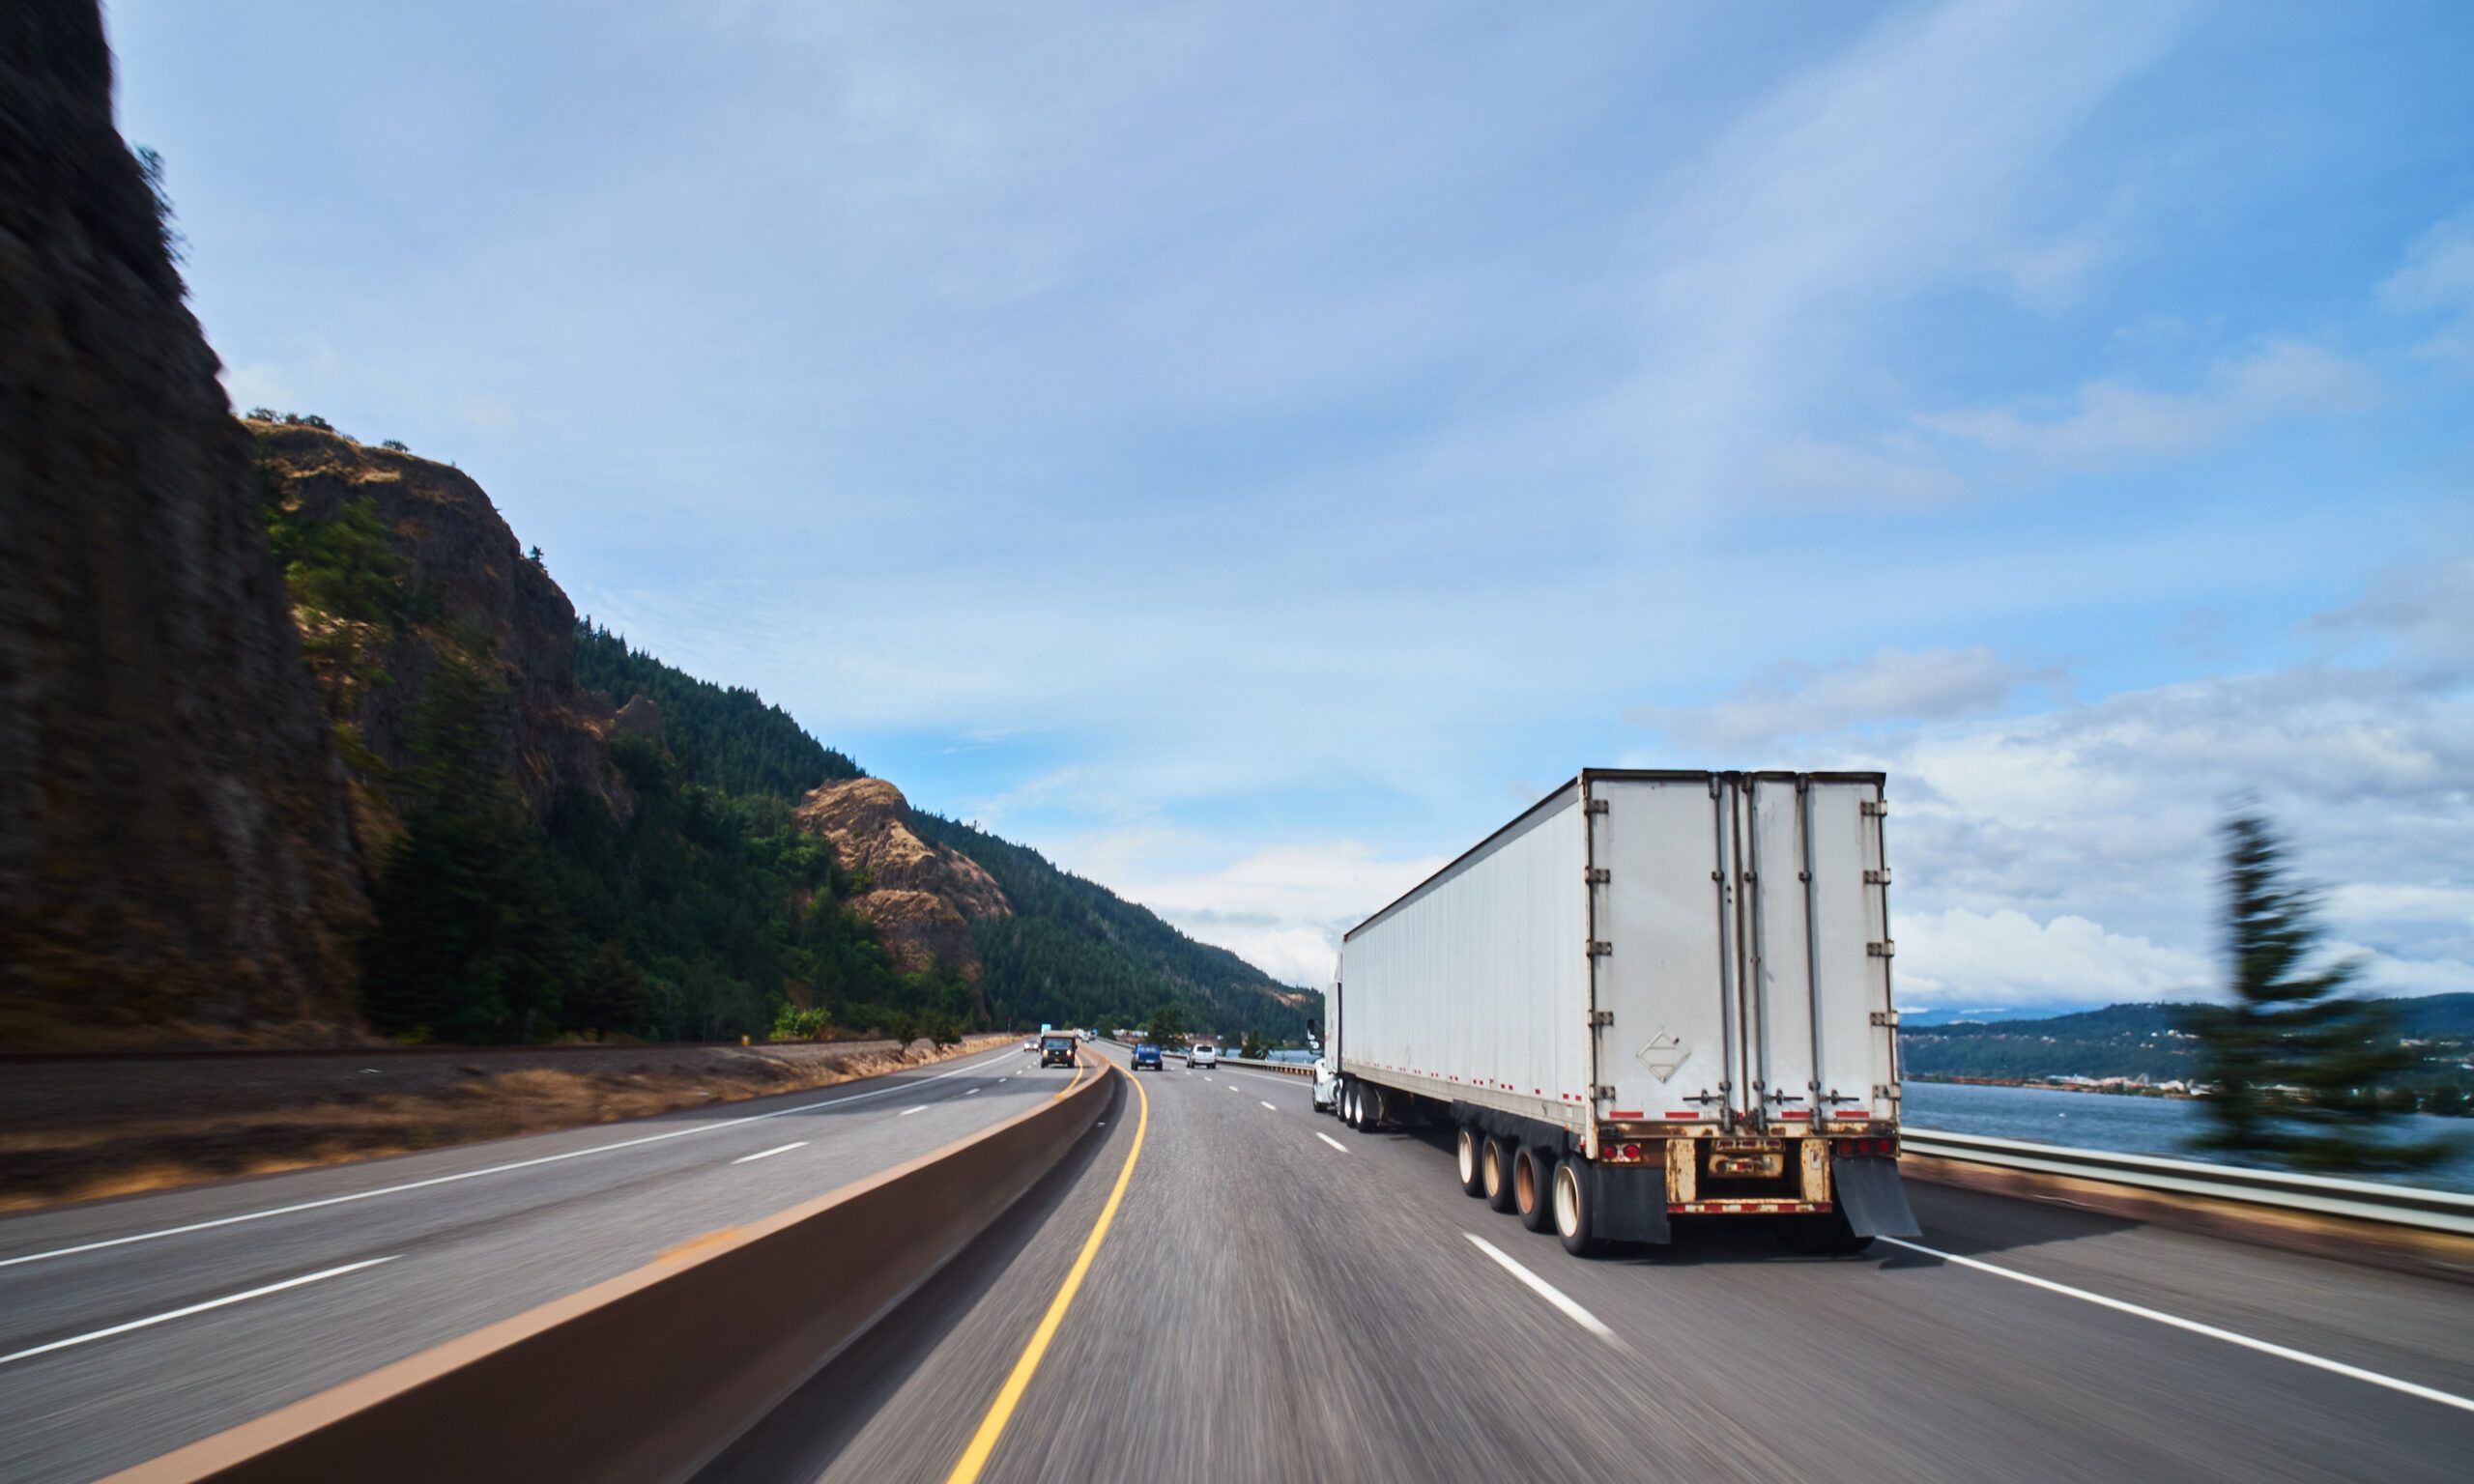 El mercado de servicios logísticos de terceros (3PL) en Estados Unidos y Canadá se estima en unos 229,200 millones de dólares anuales. The third-party logistics services (3PL) market in the United States and Canada is estimated at $229.2 billion annually.